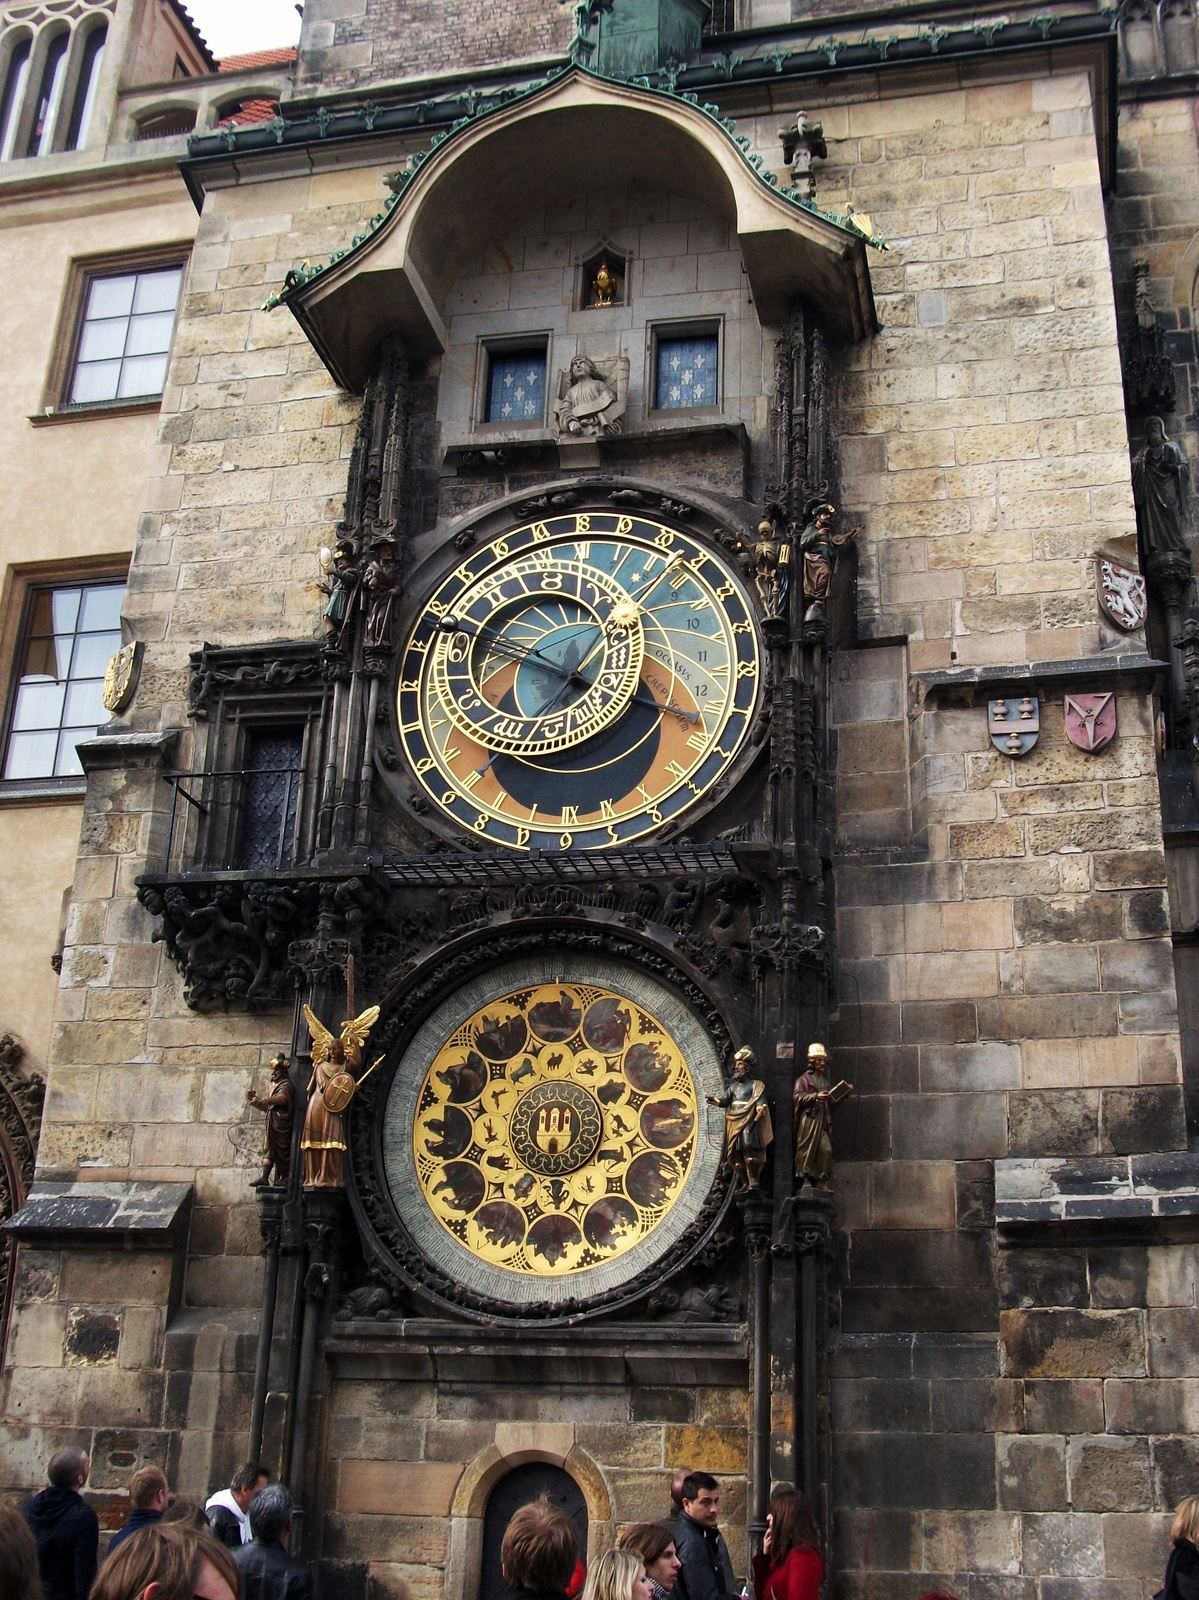 A híres óratorony, az Orloj